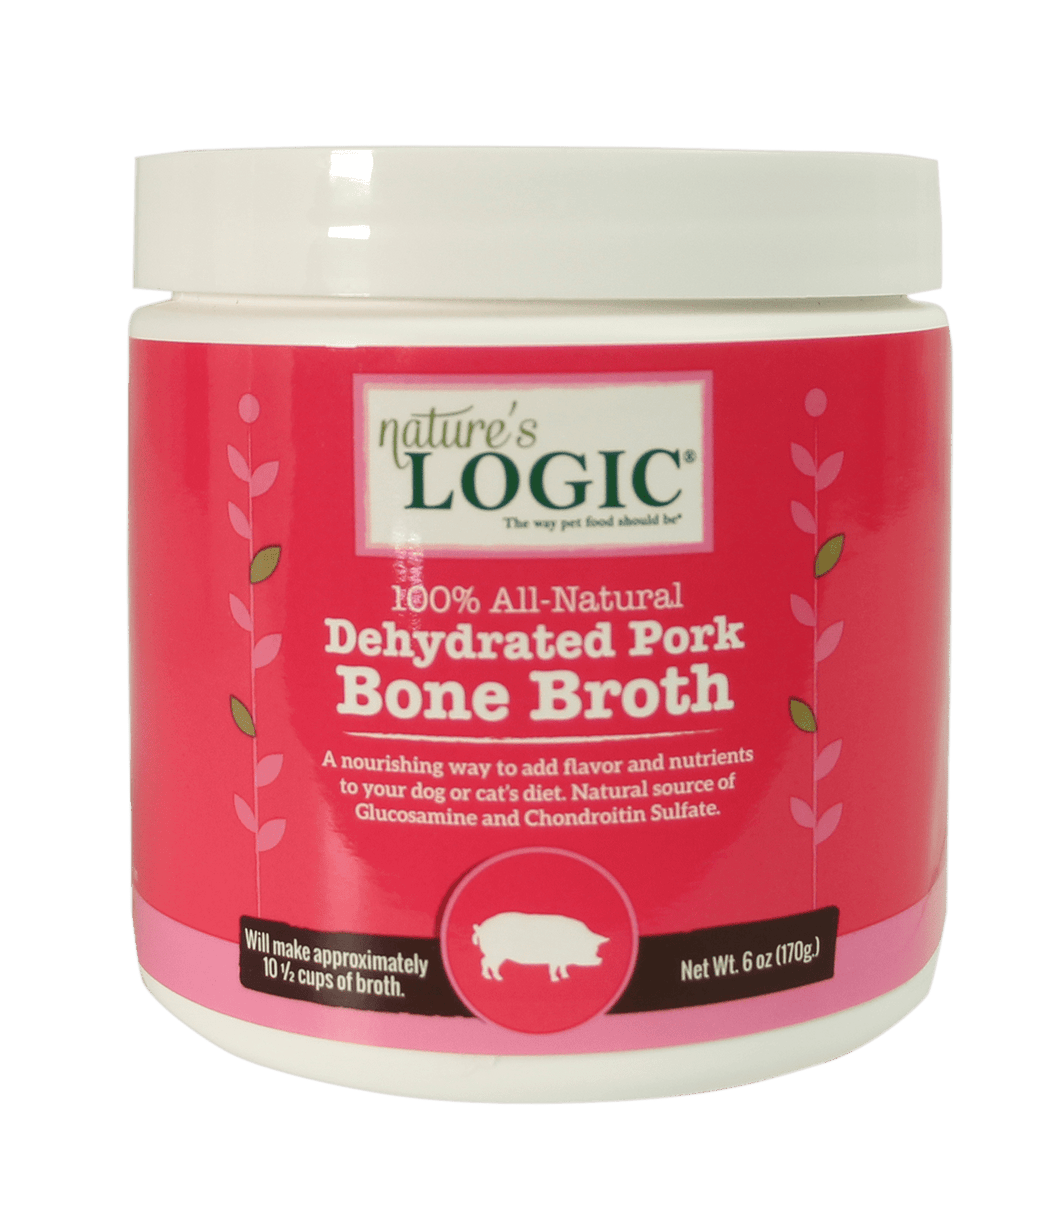 Bone Broth - Dehydrated